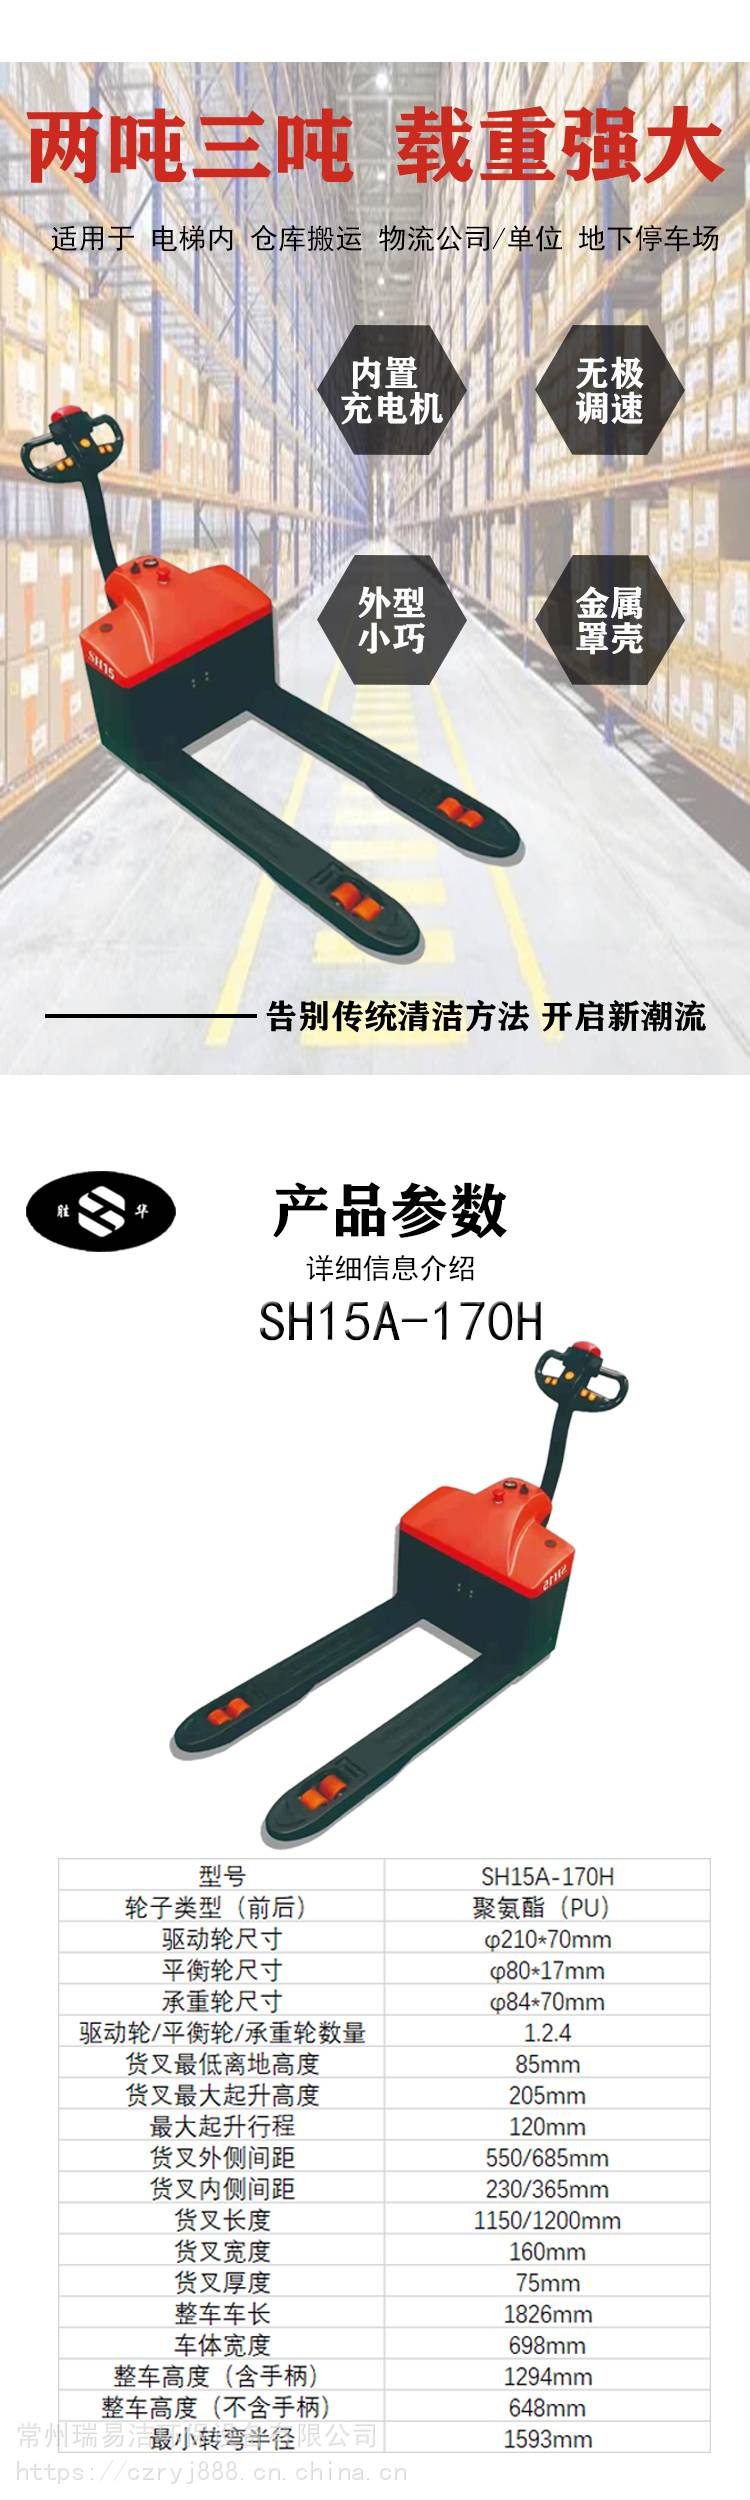 胜华SH-1900三轮驾驶式封闭电动扫地车